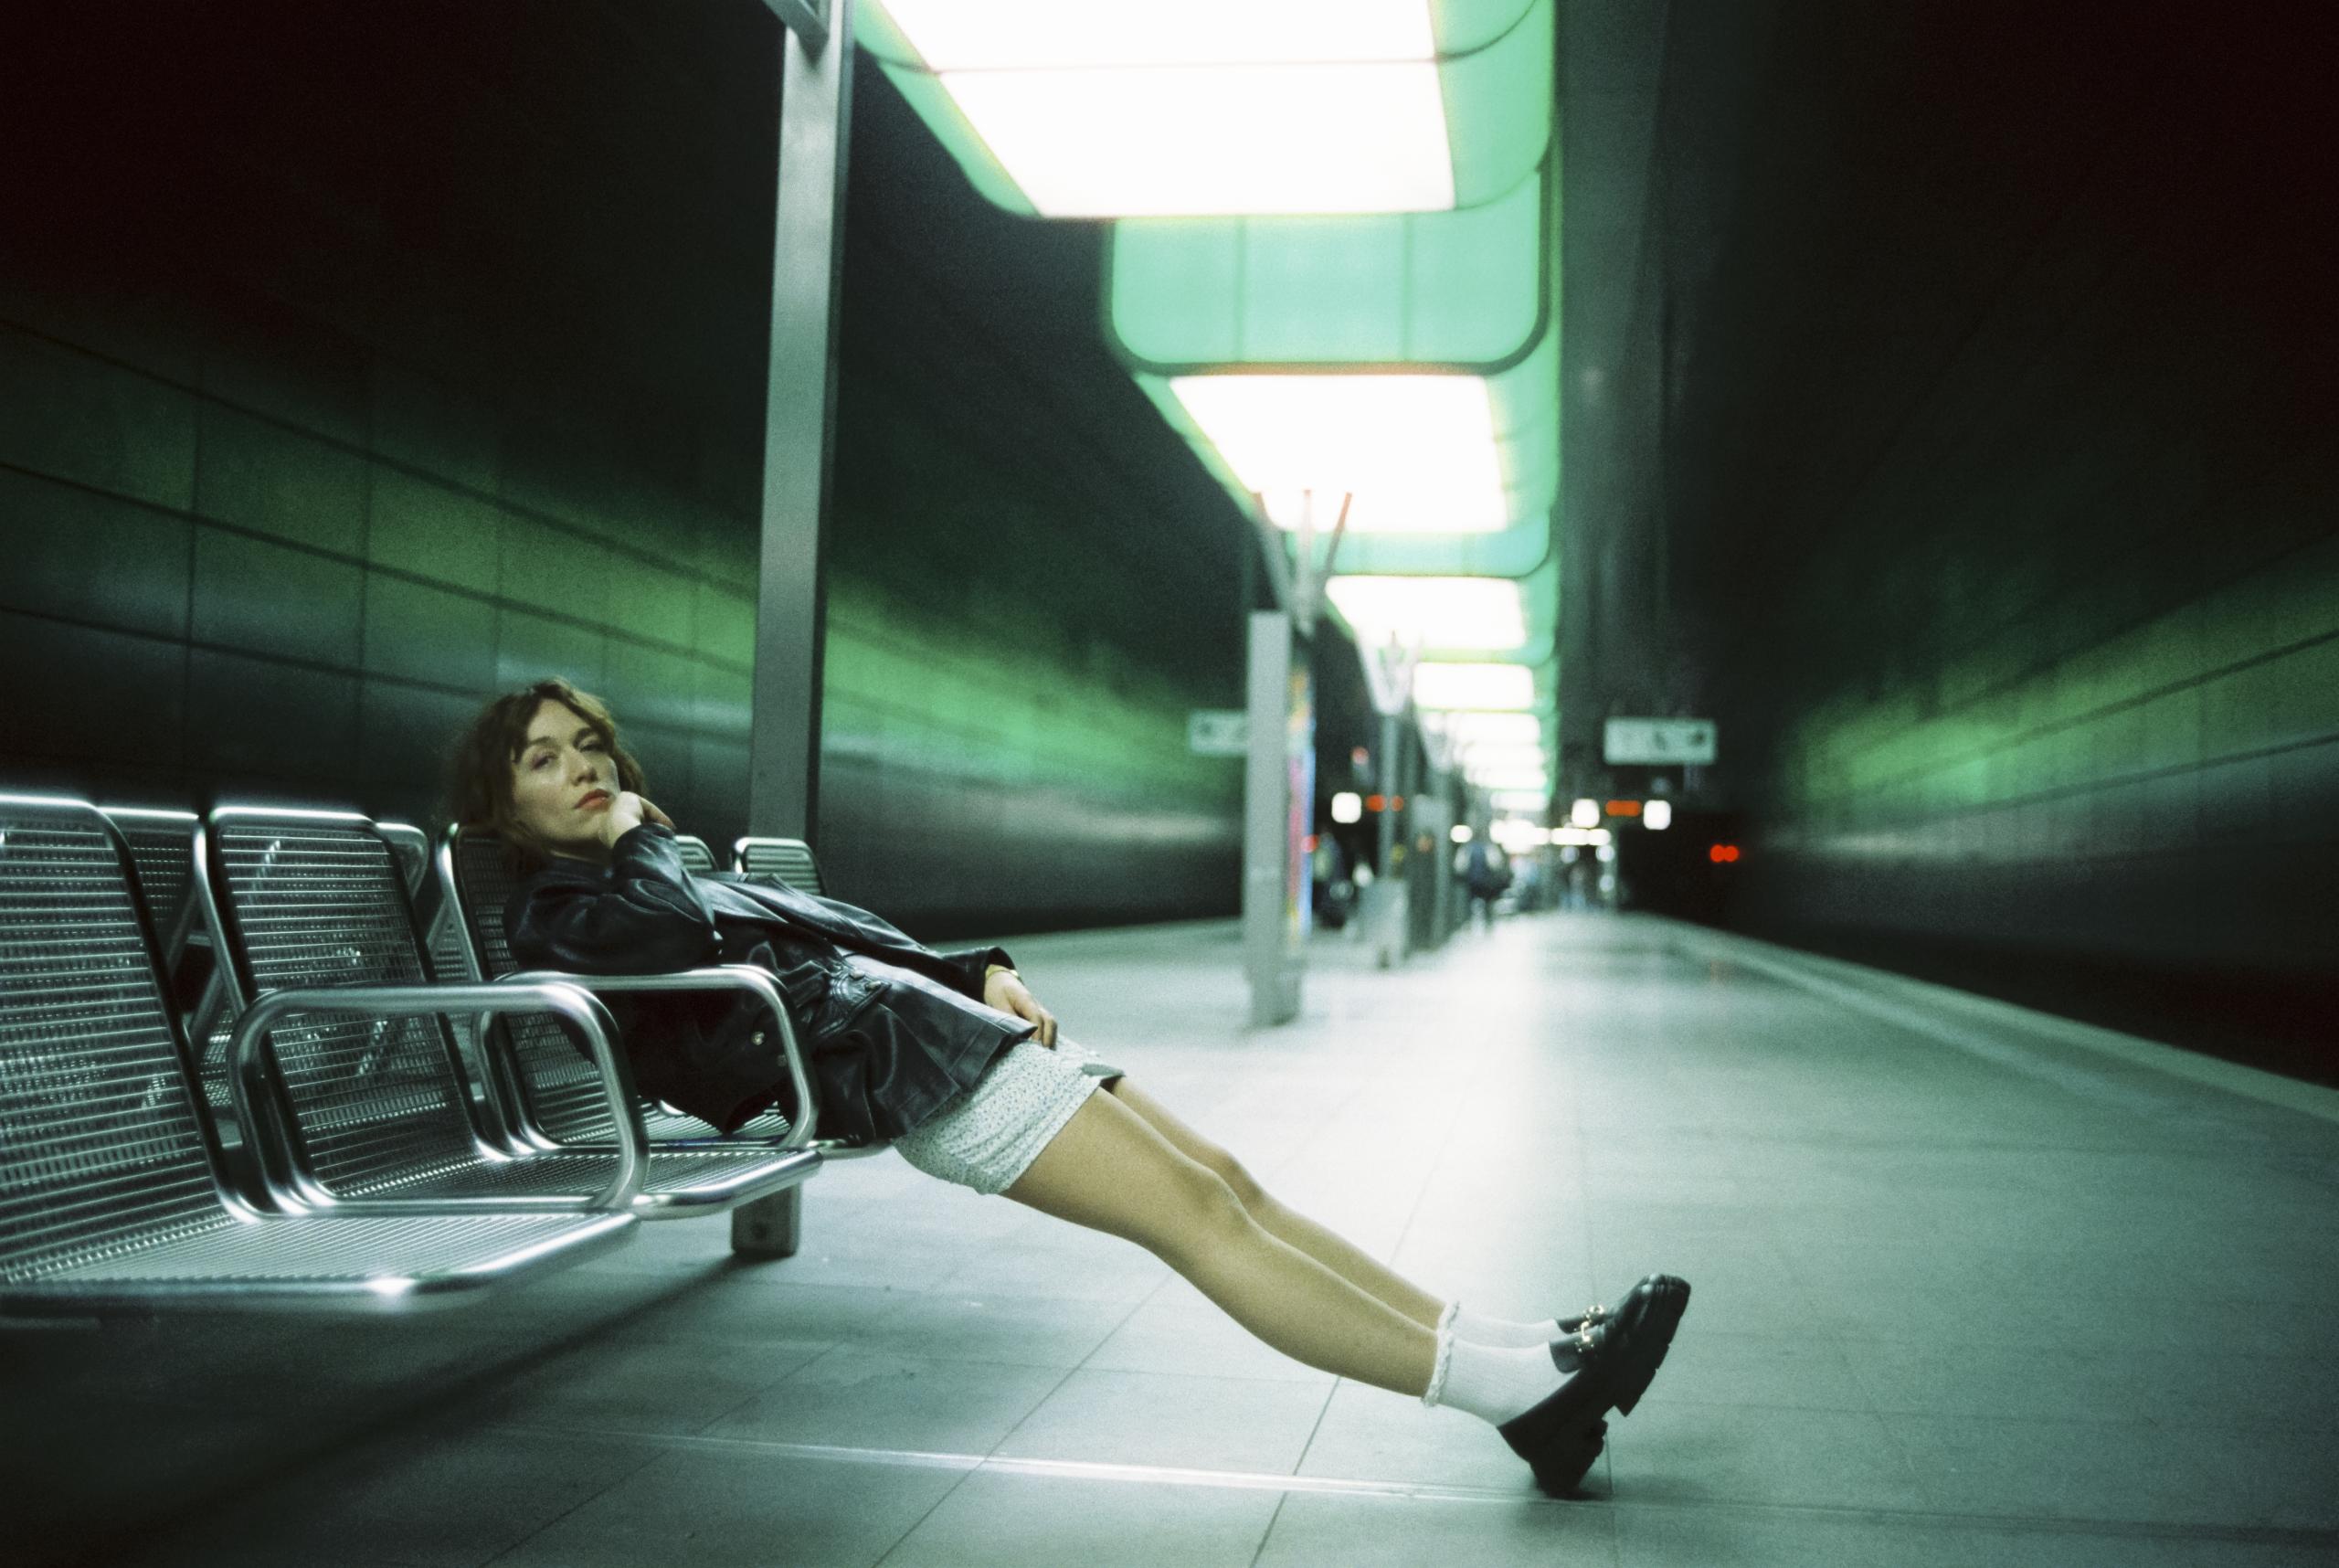 Der Bahnsteig einer Ubahn-Station. Auf den Sitzplätzen posiert eine junge Frau in Lederjacke und Shorts.